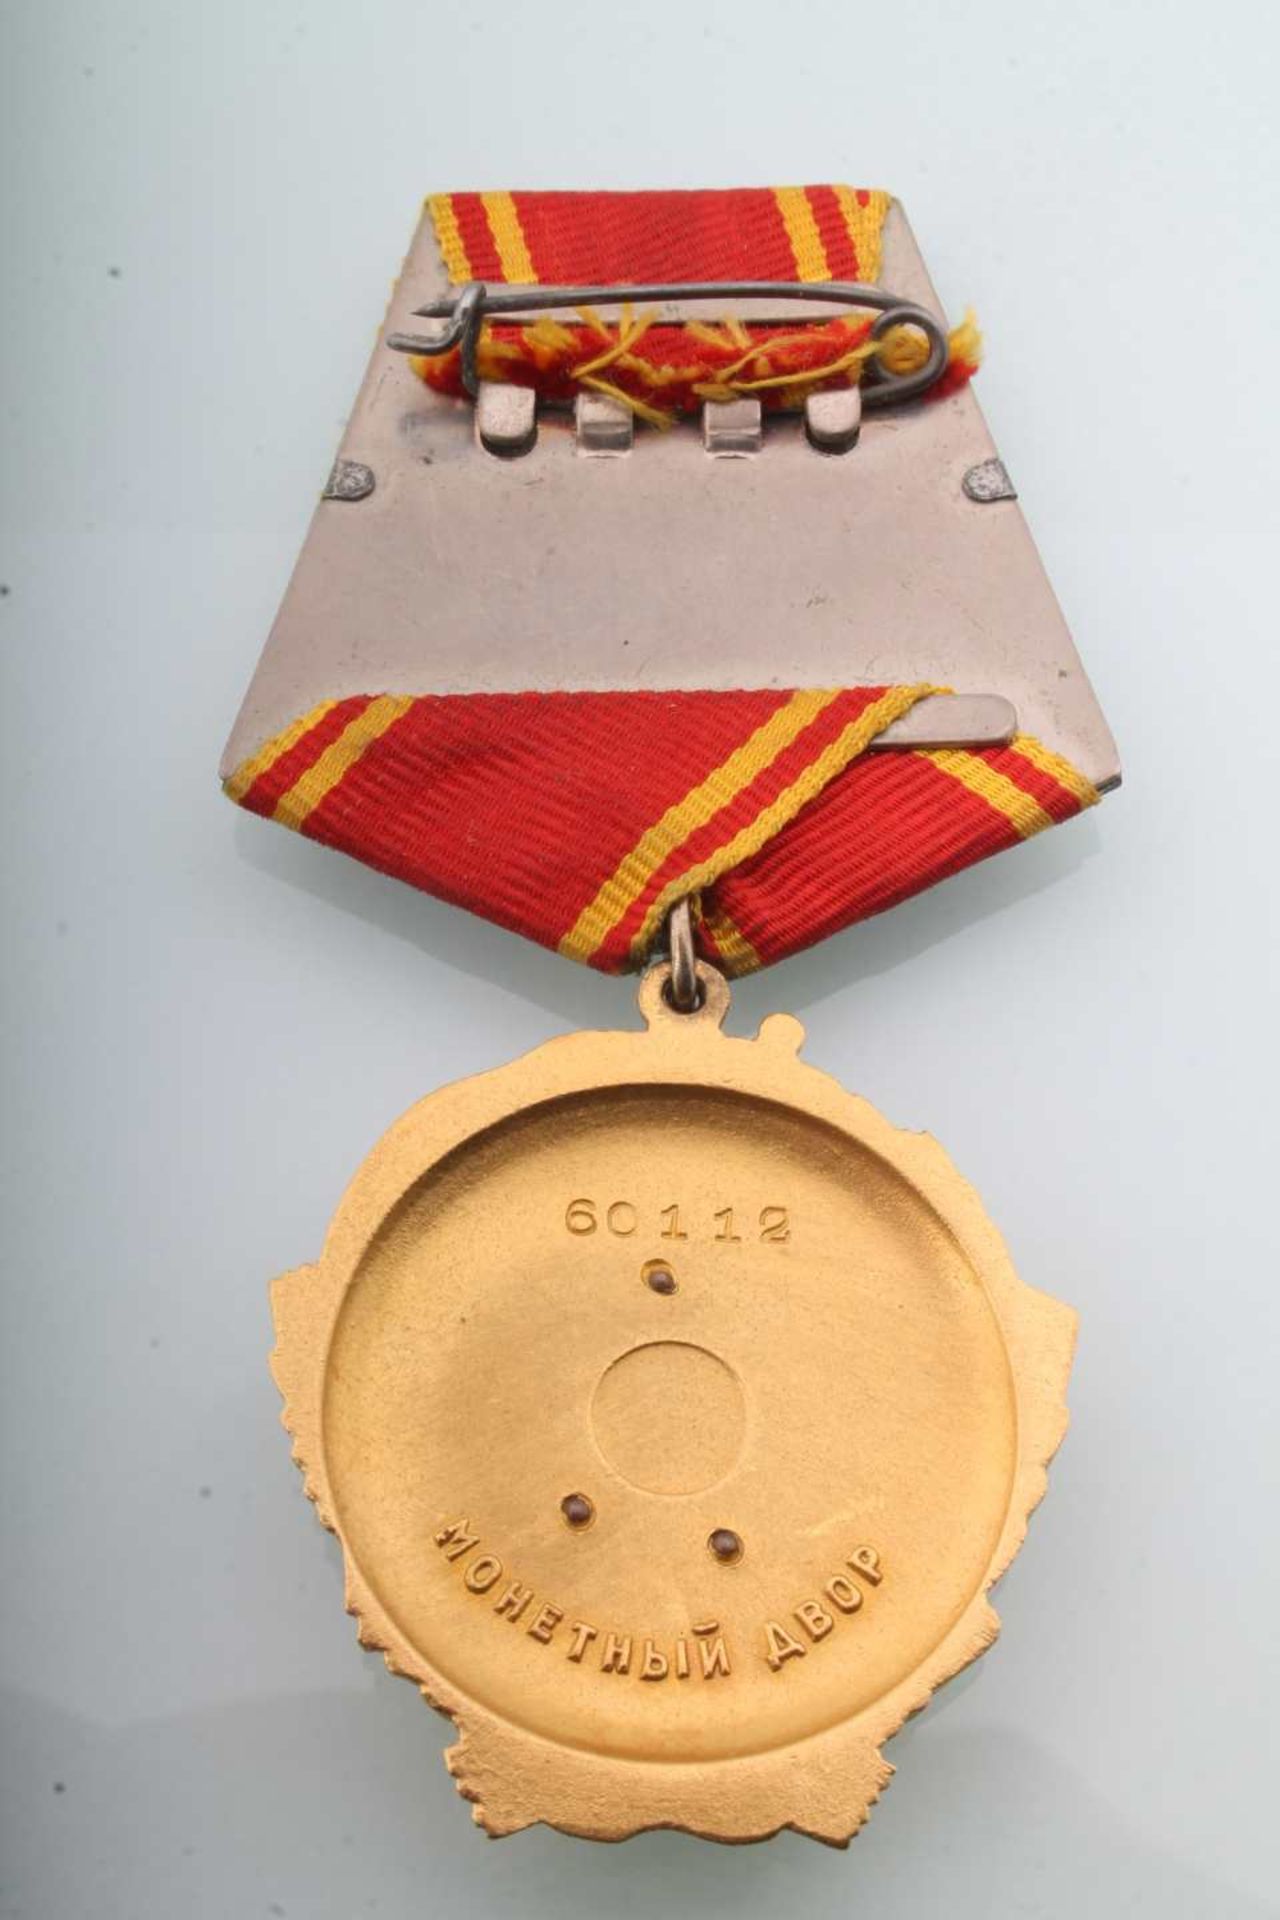 Leninorden Sowjetunion, Lenin medal soviet union, - Image 4 of 4